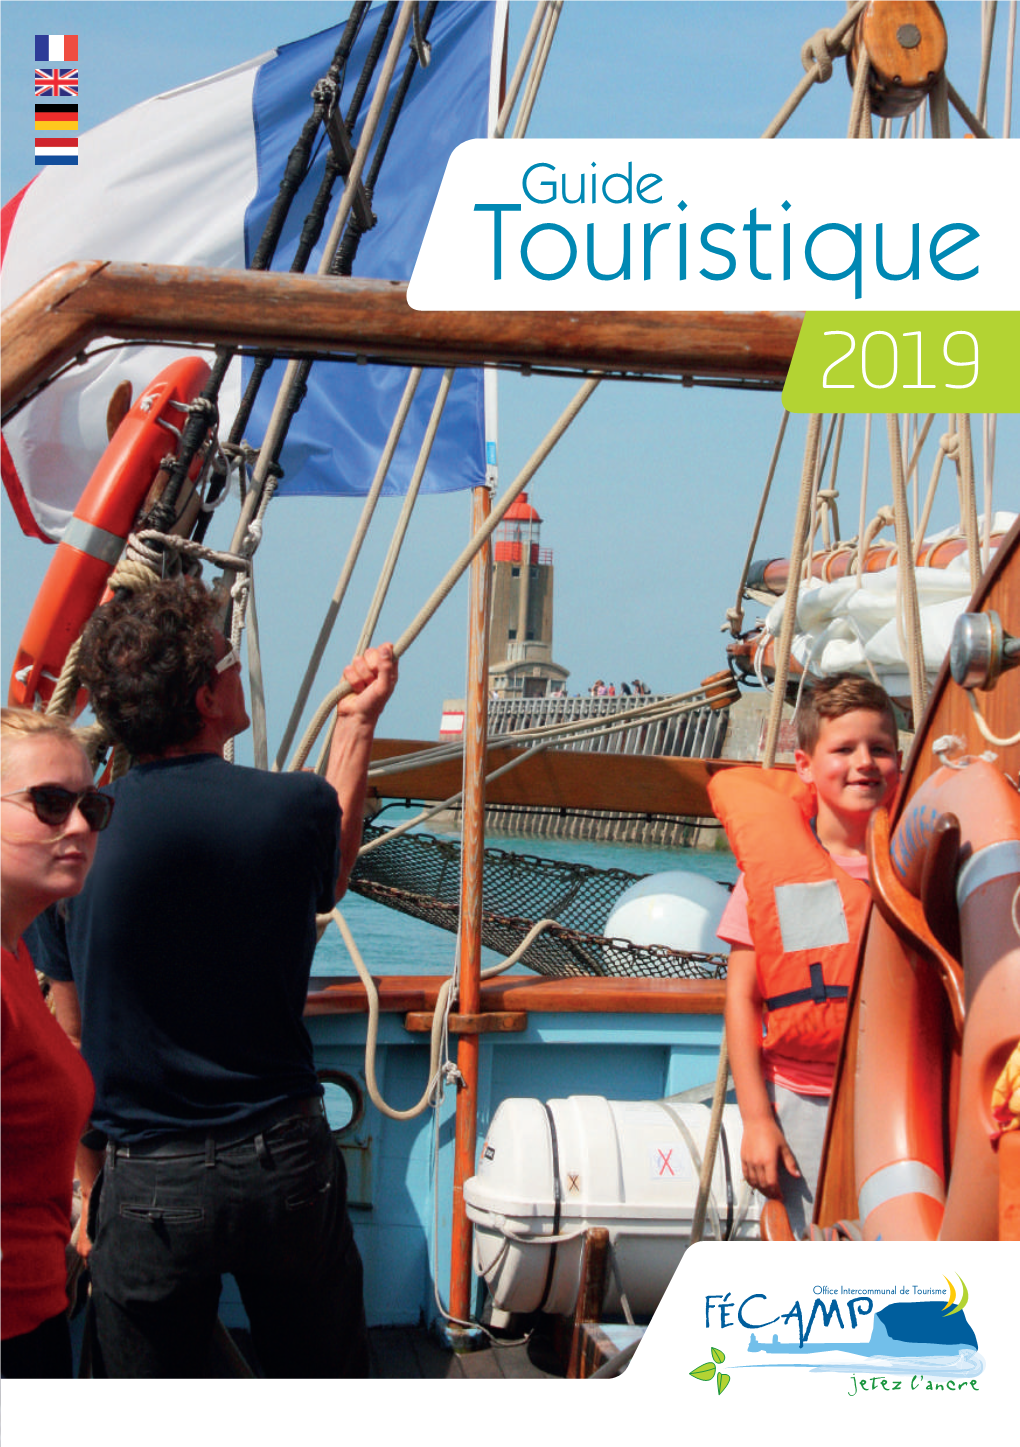 Guide Touristique 2019 Bienvenue